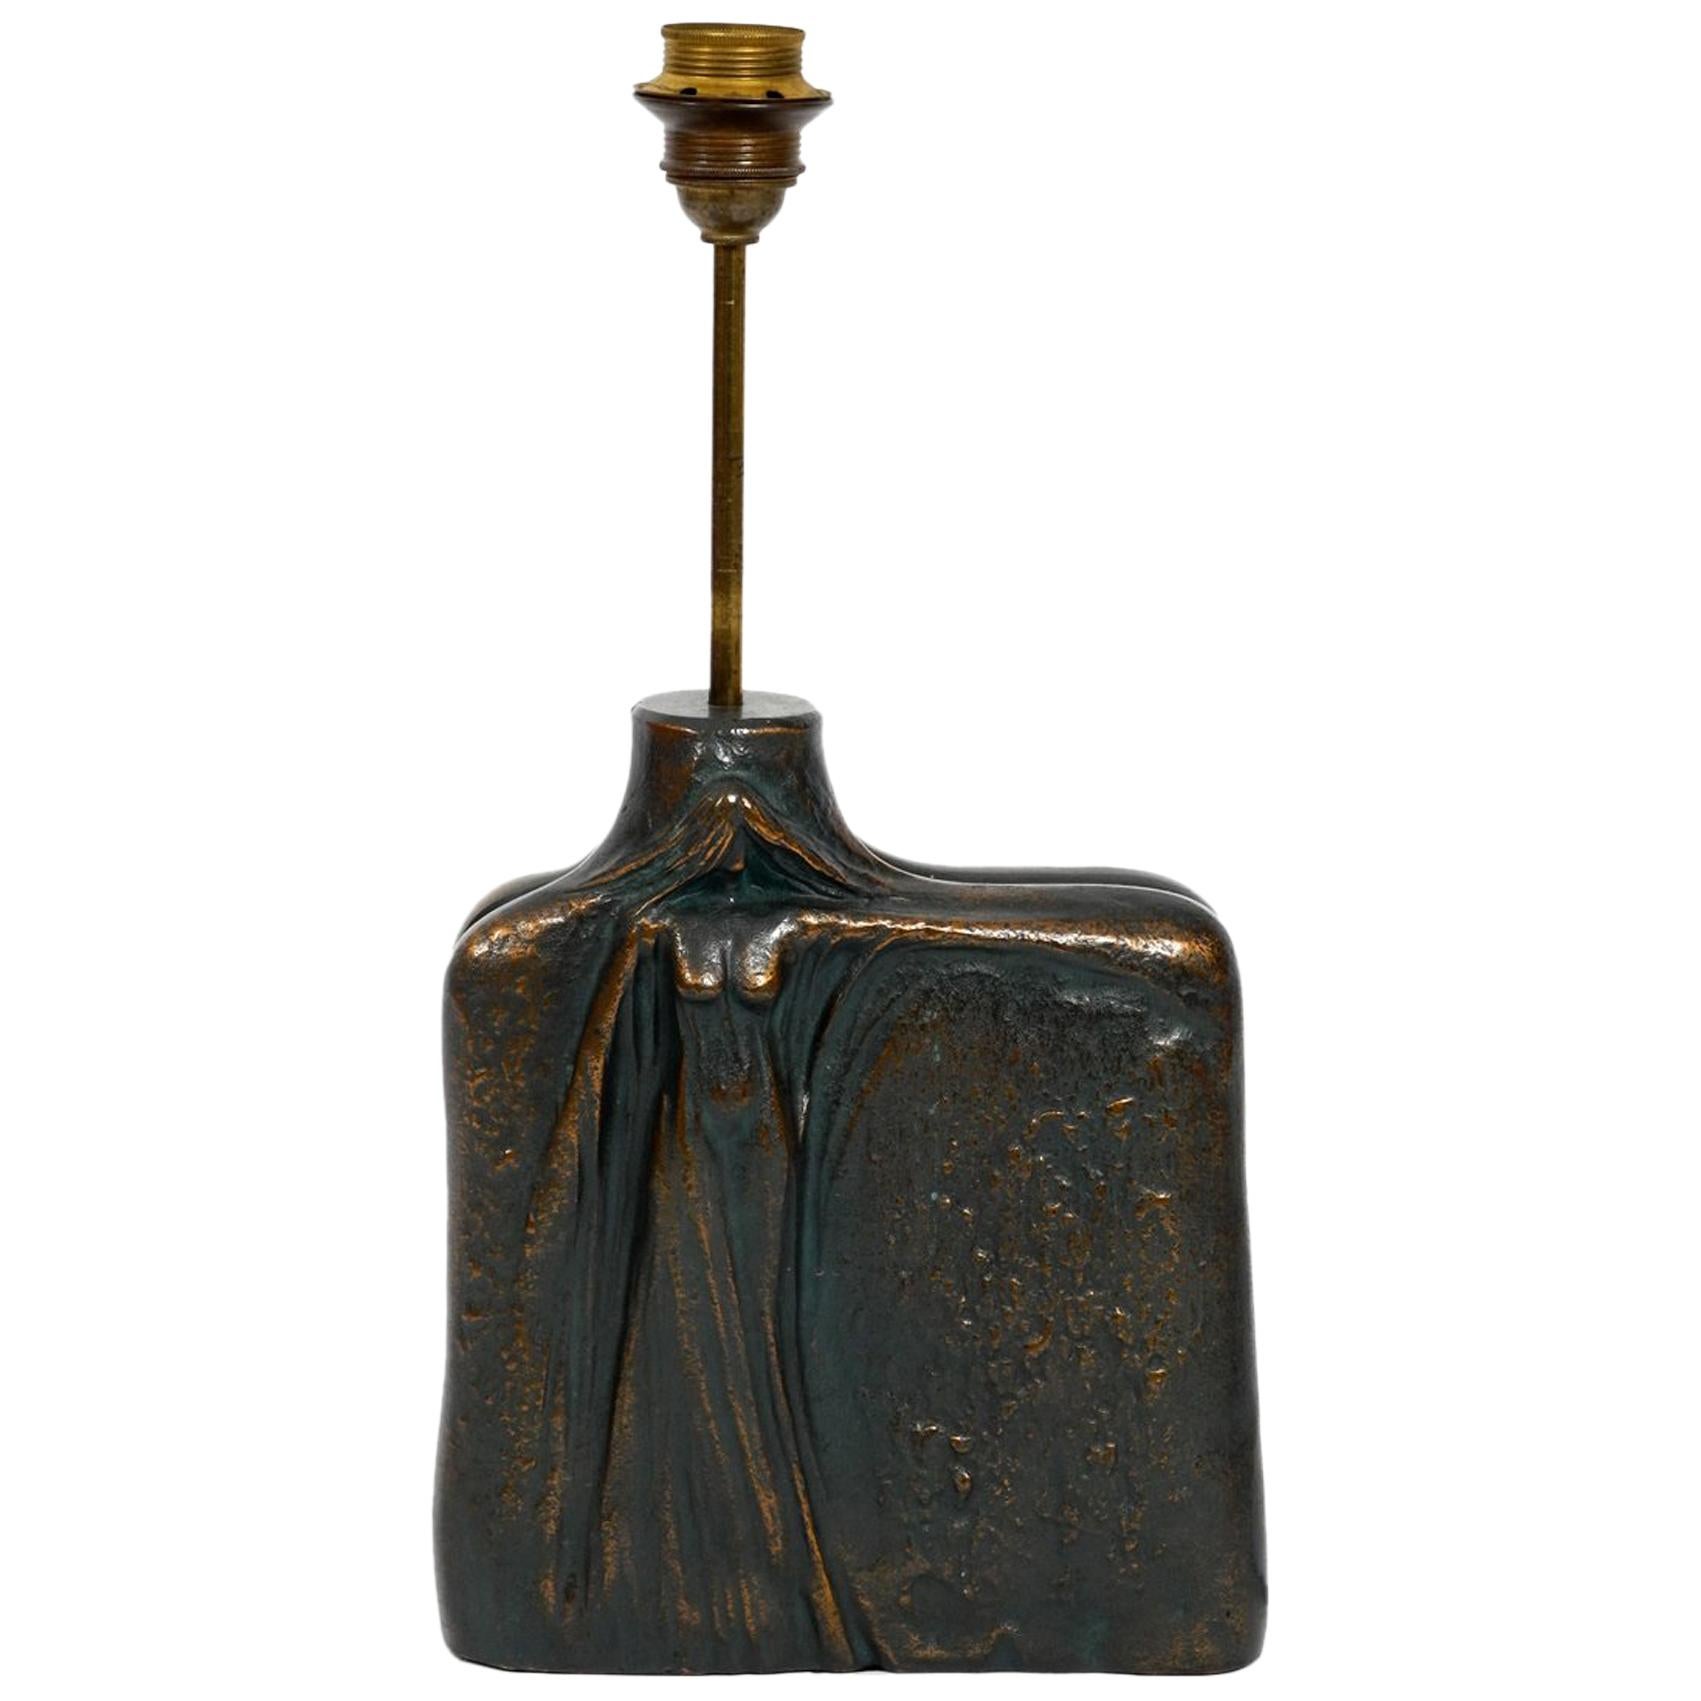 Très élégante lampe de table des années 1960 en bronze lourd avec une figure féminine